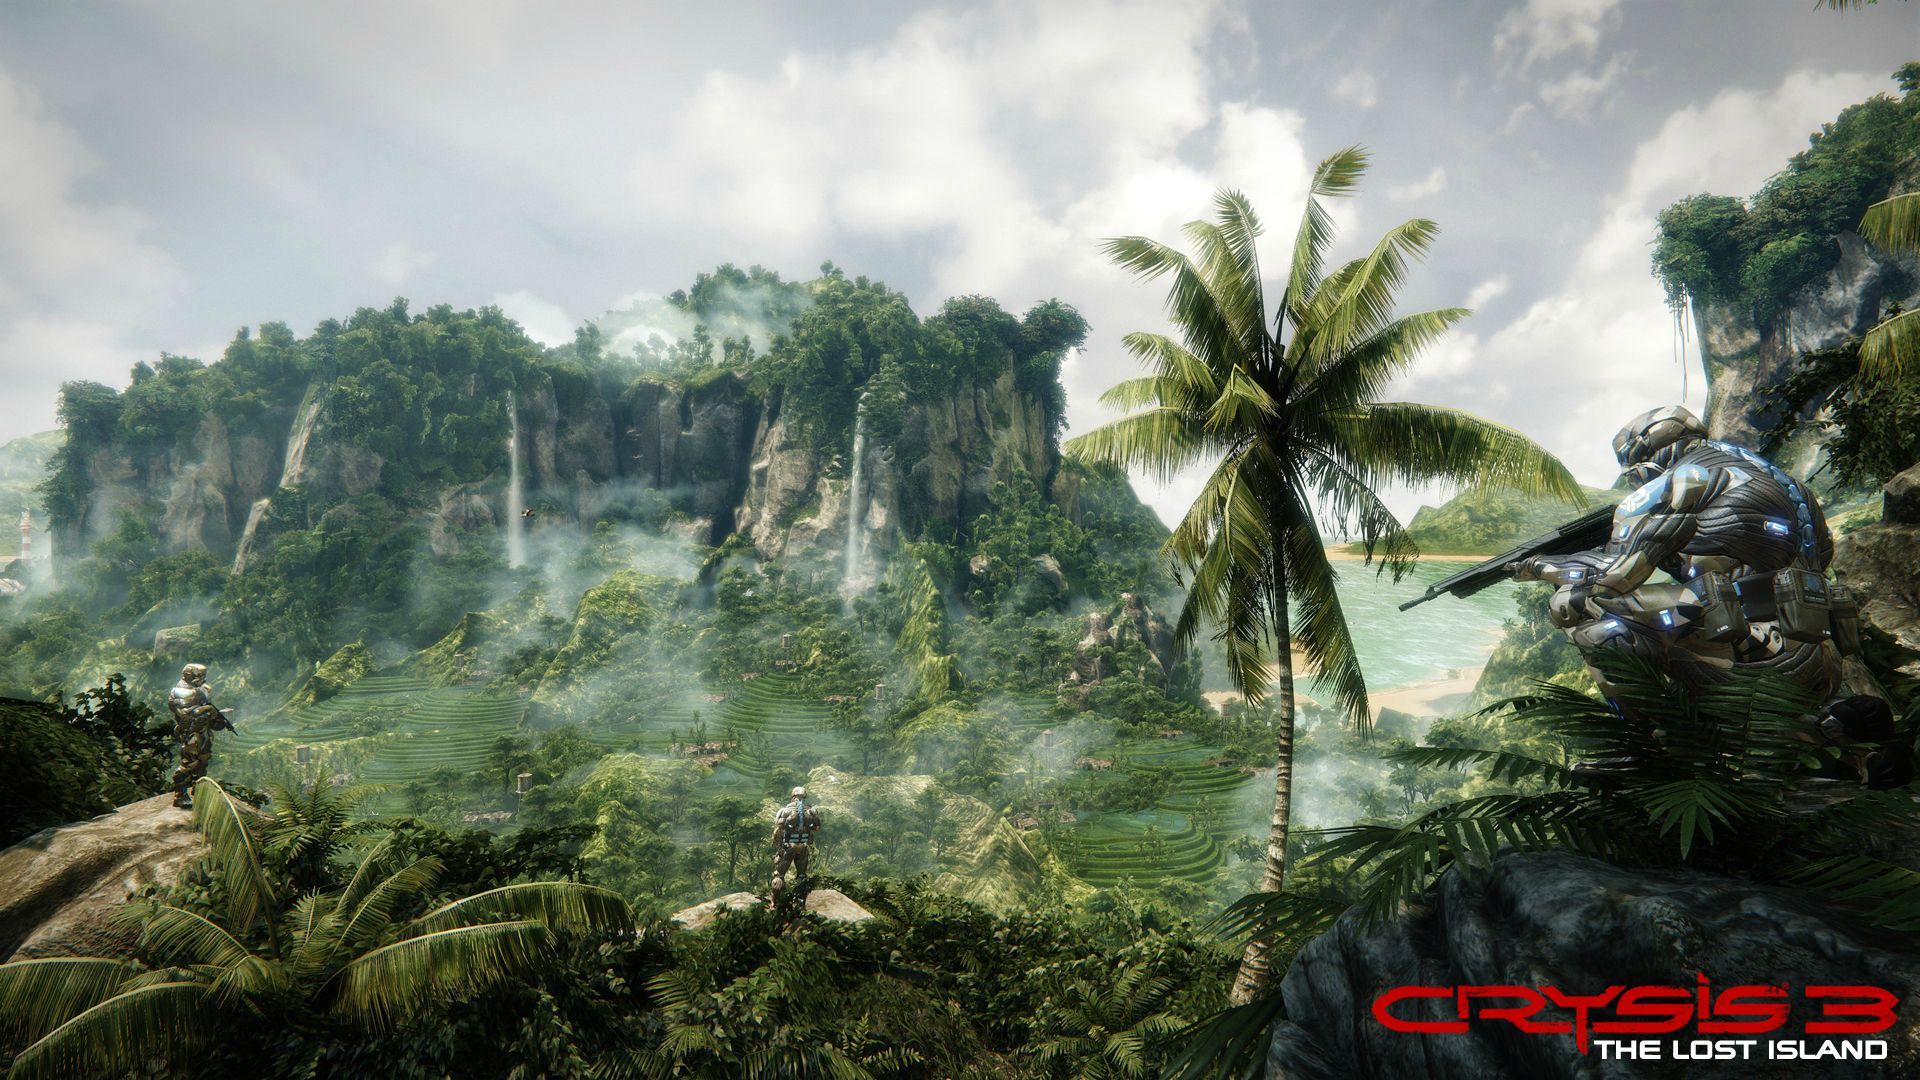 Immagine pubblicata in relazione al seguente contenuto: Presentazione e screenshots del DLC Crysis 3: The Lost Island | Nome immagine: news19611_Crysis-3-The-Lost-Island_1.jpg